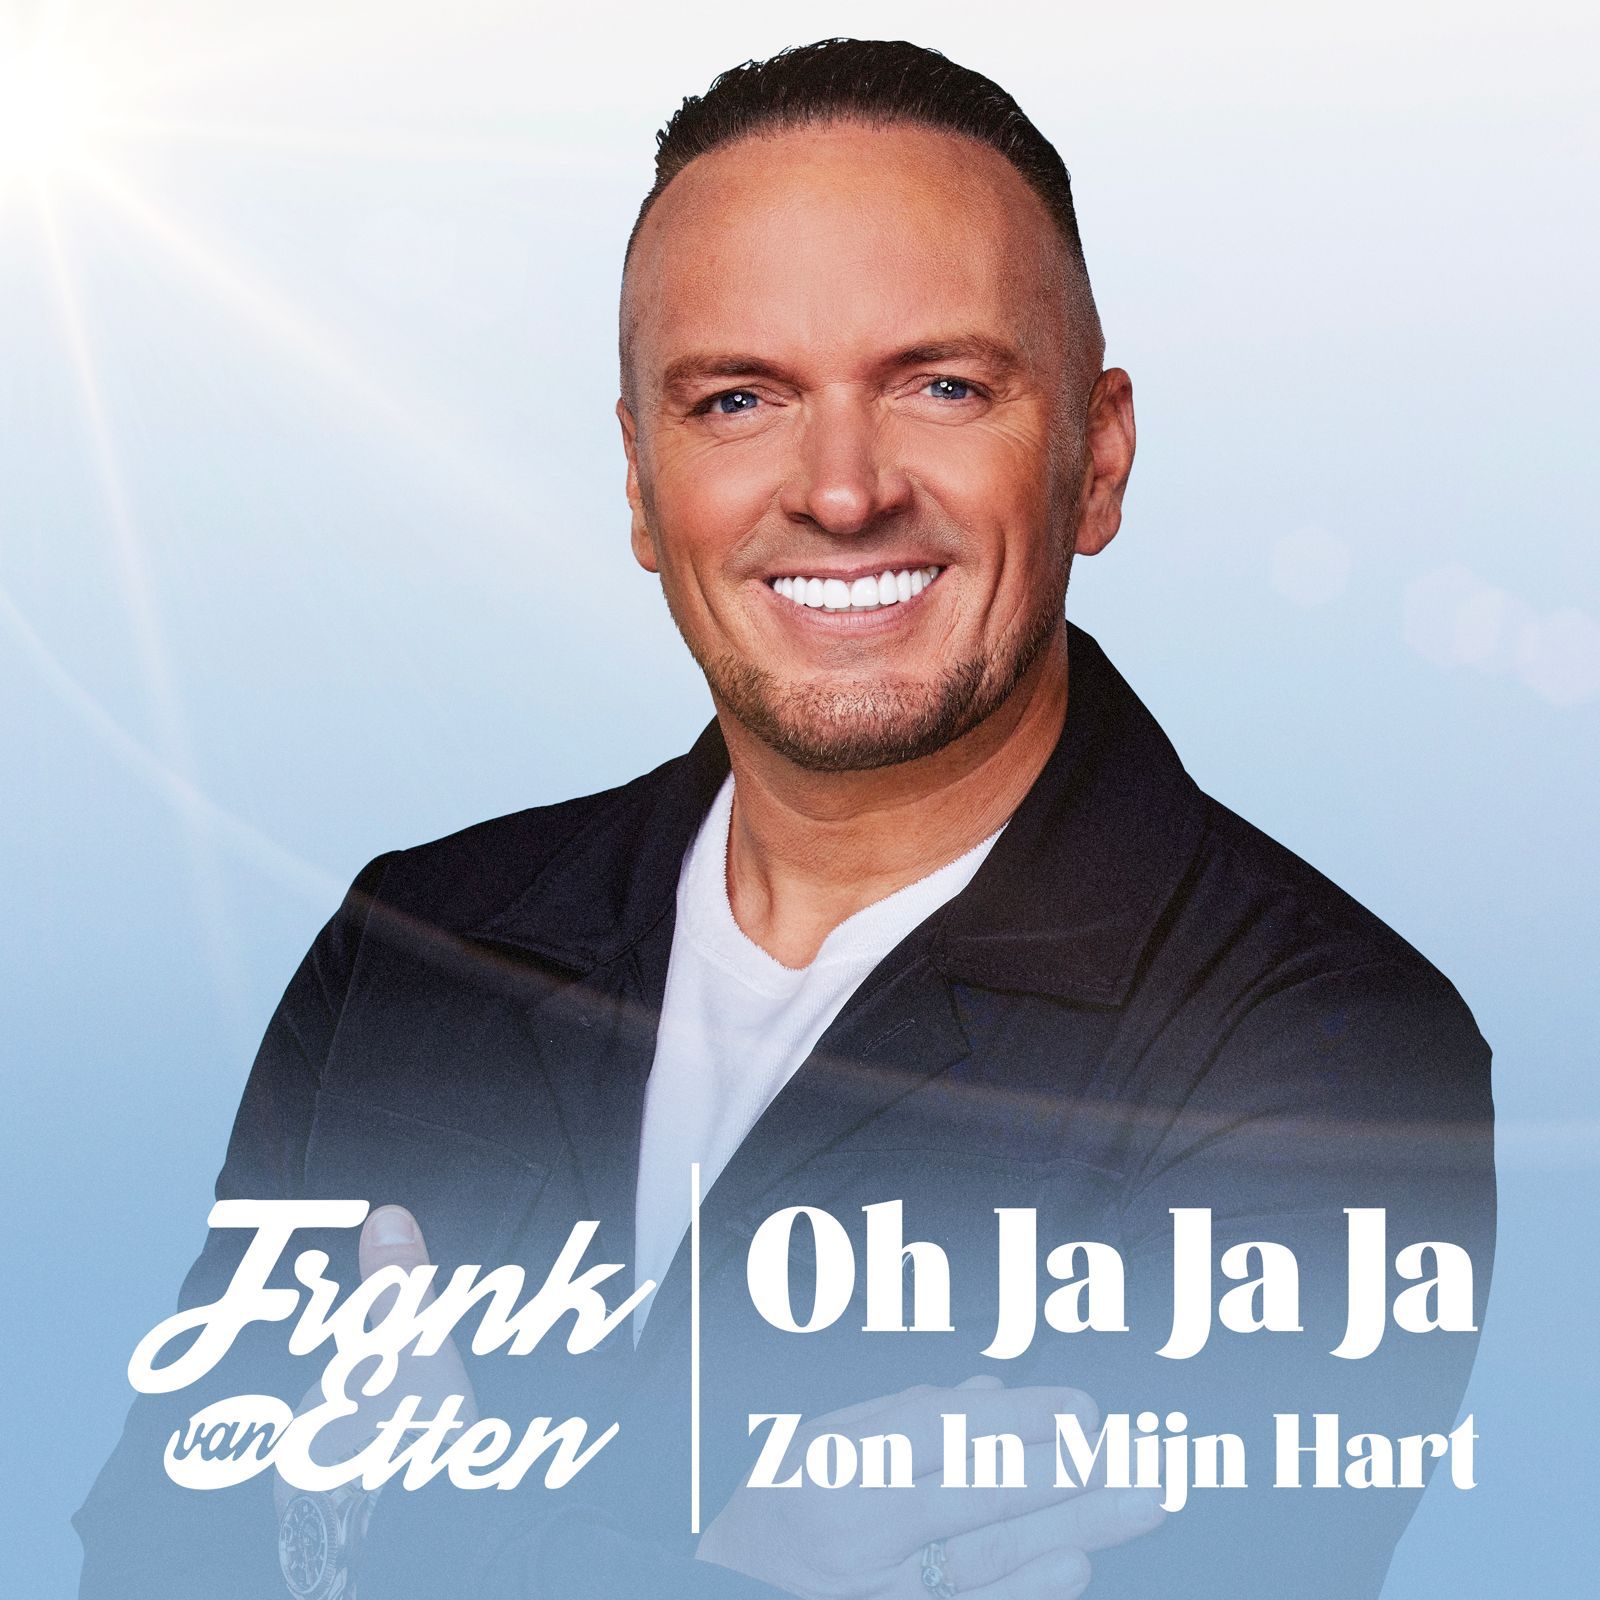 WAKE UP CALL: Frank van Etten met de nieuwe single in primeur (AUDIO)